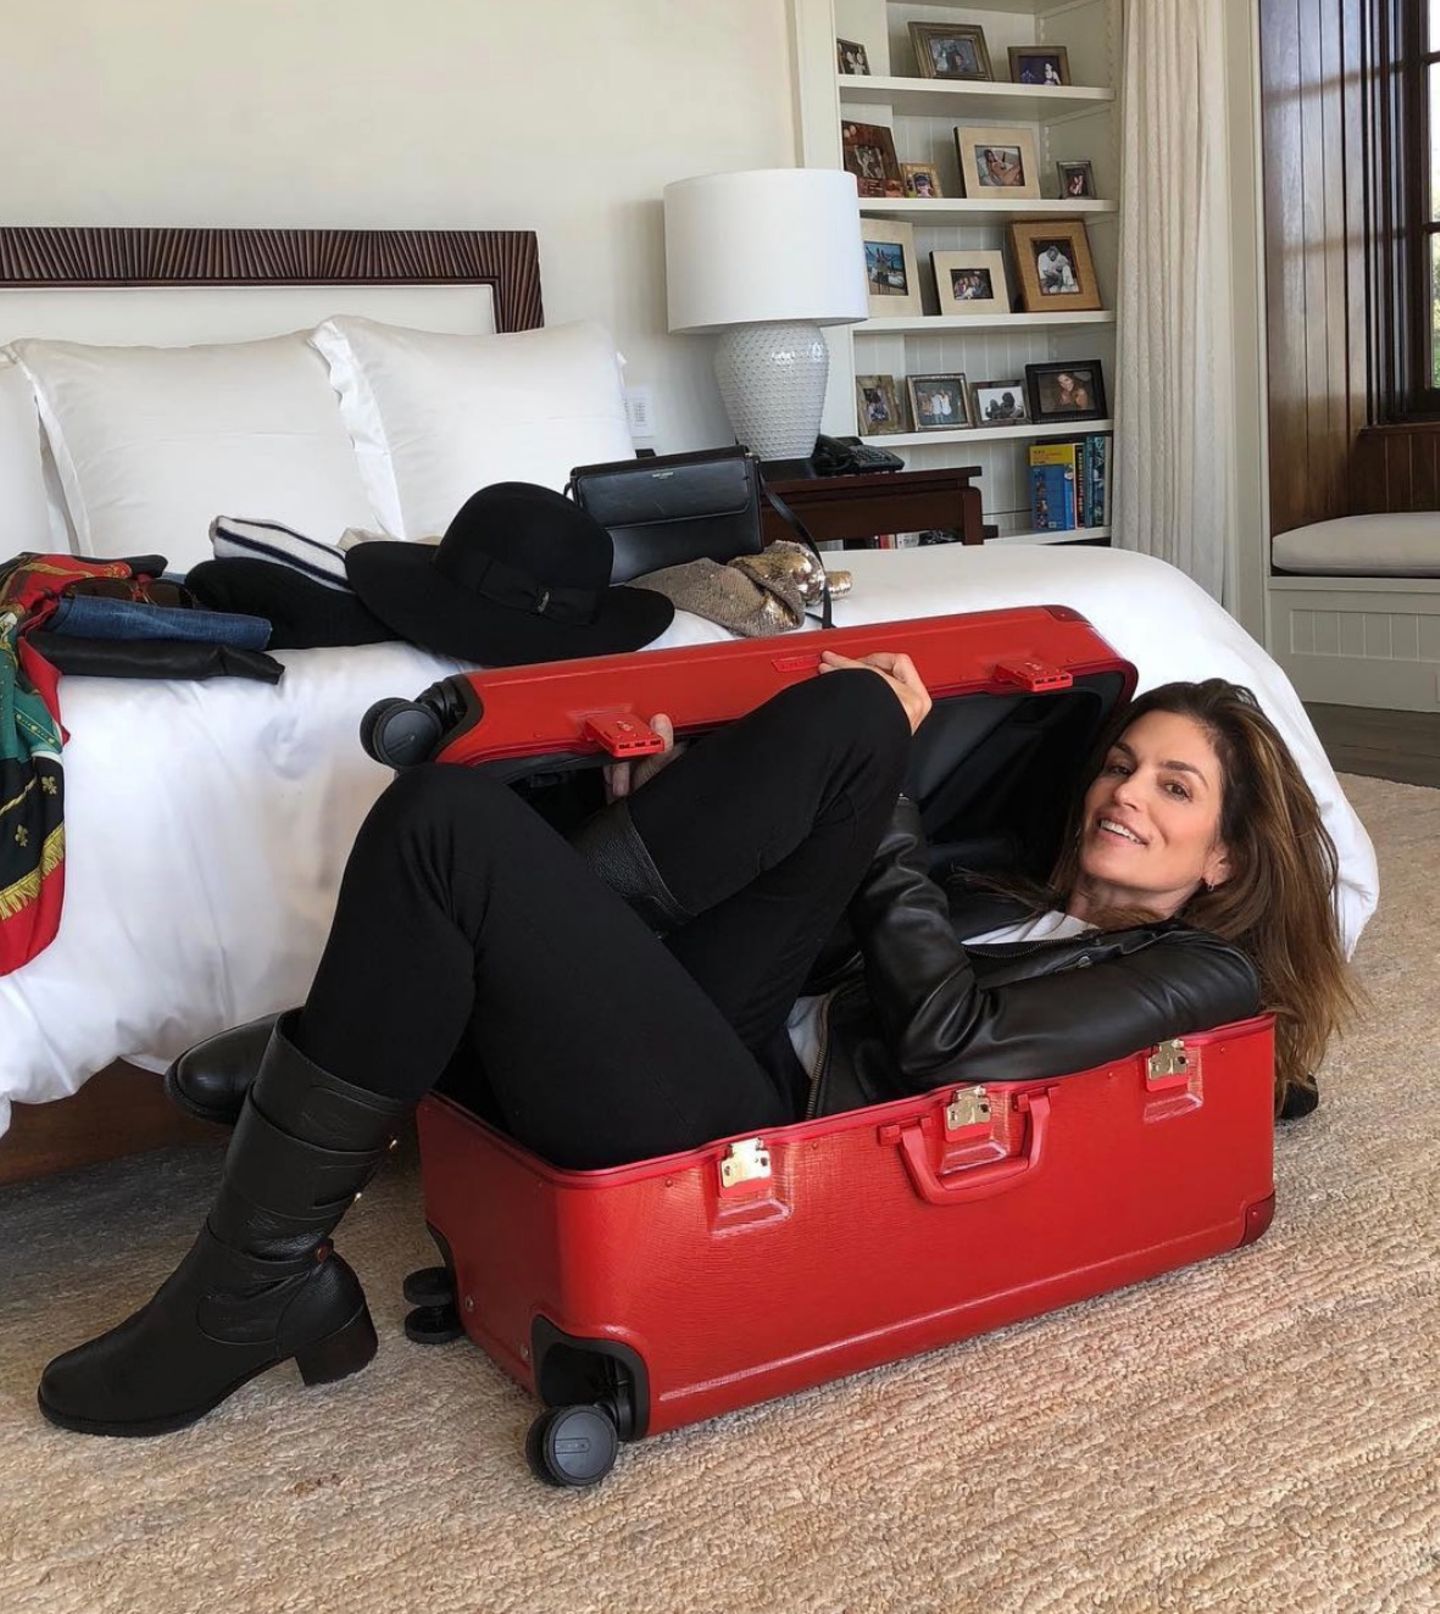 4. Dezember 2018  Selbst mit ihren Modelmaßen passt Cindy Crawford wohl nicht in einen Reisekoffer. "Wenn ich hier reinpasse, finden auch alle Dinge, die ich einpacken möchte, ihren Platz in diesem Koffer!", witzelt die Schönheit auf Instagram. Offensichtlich müssen wohl ein paar Klamotten Zuhause bleiben. 